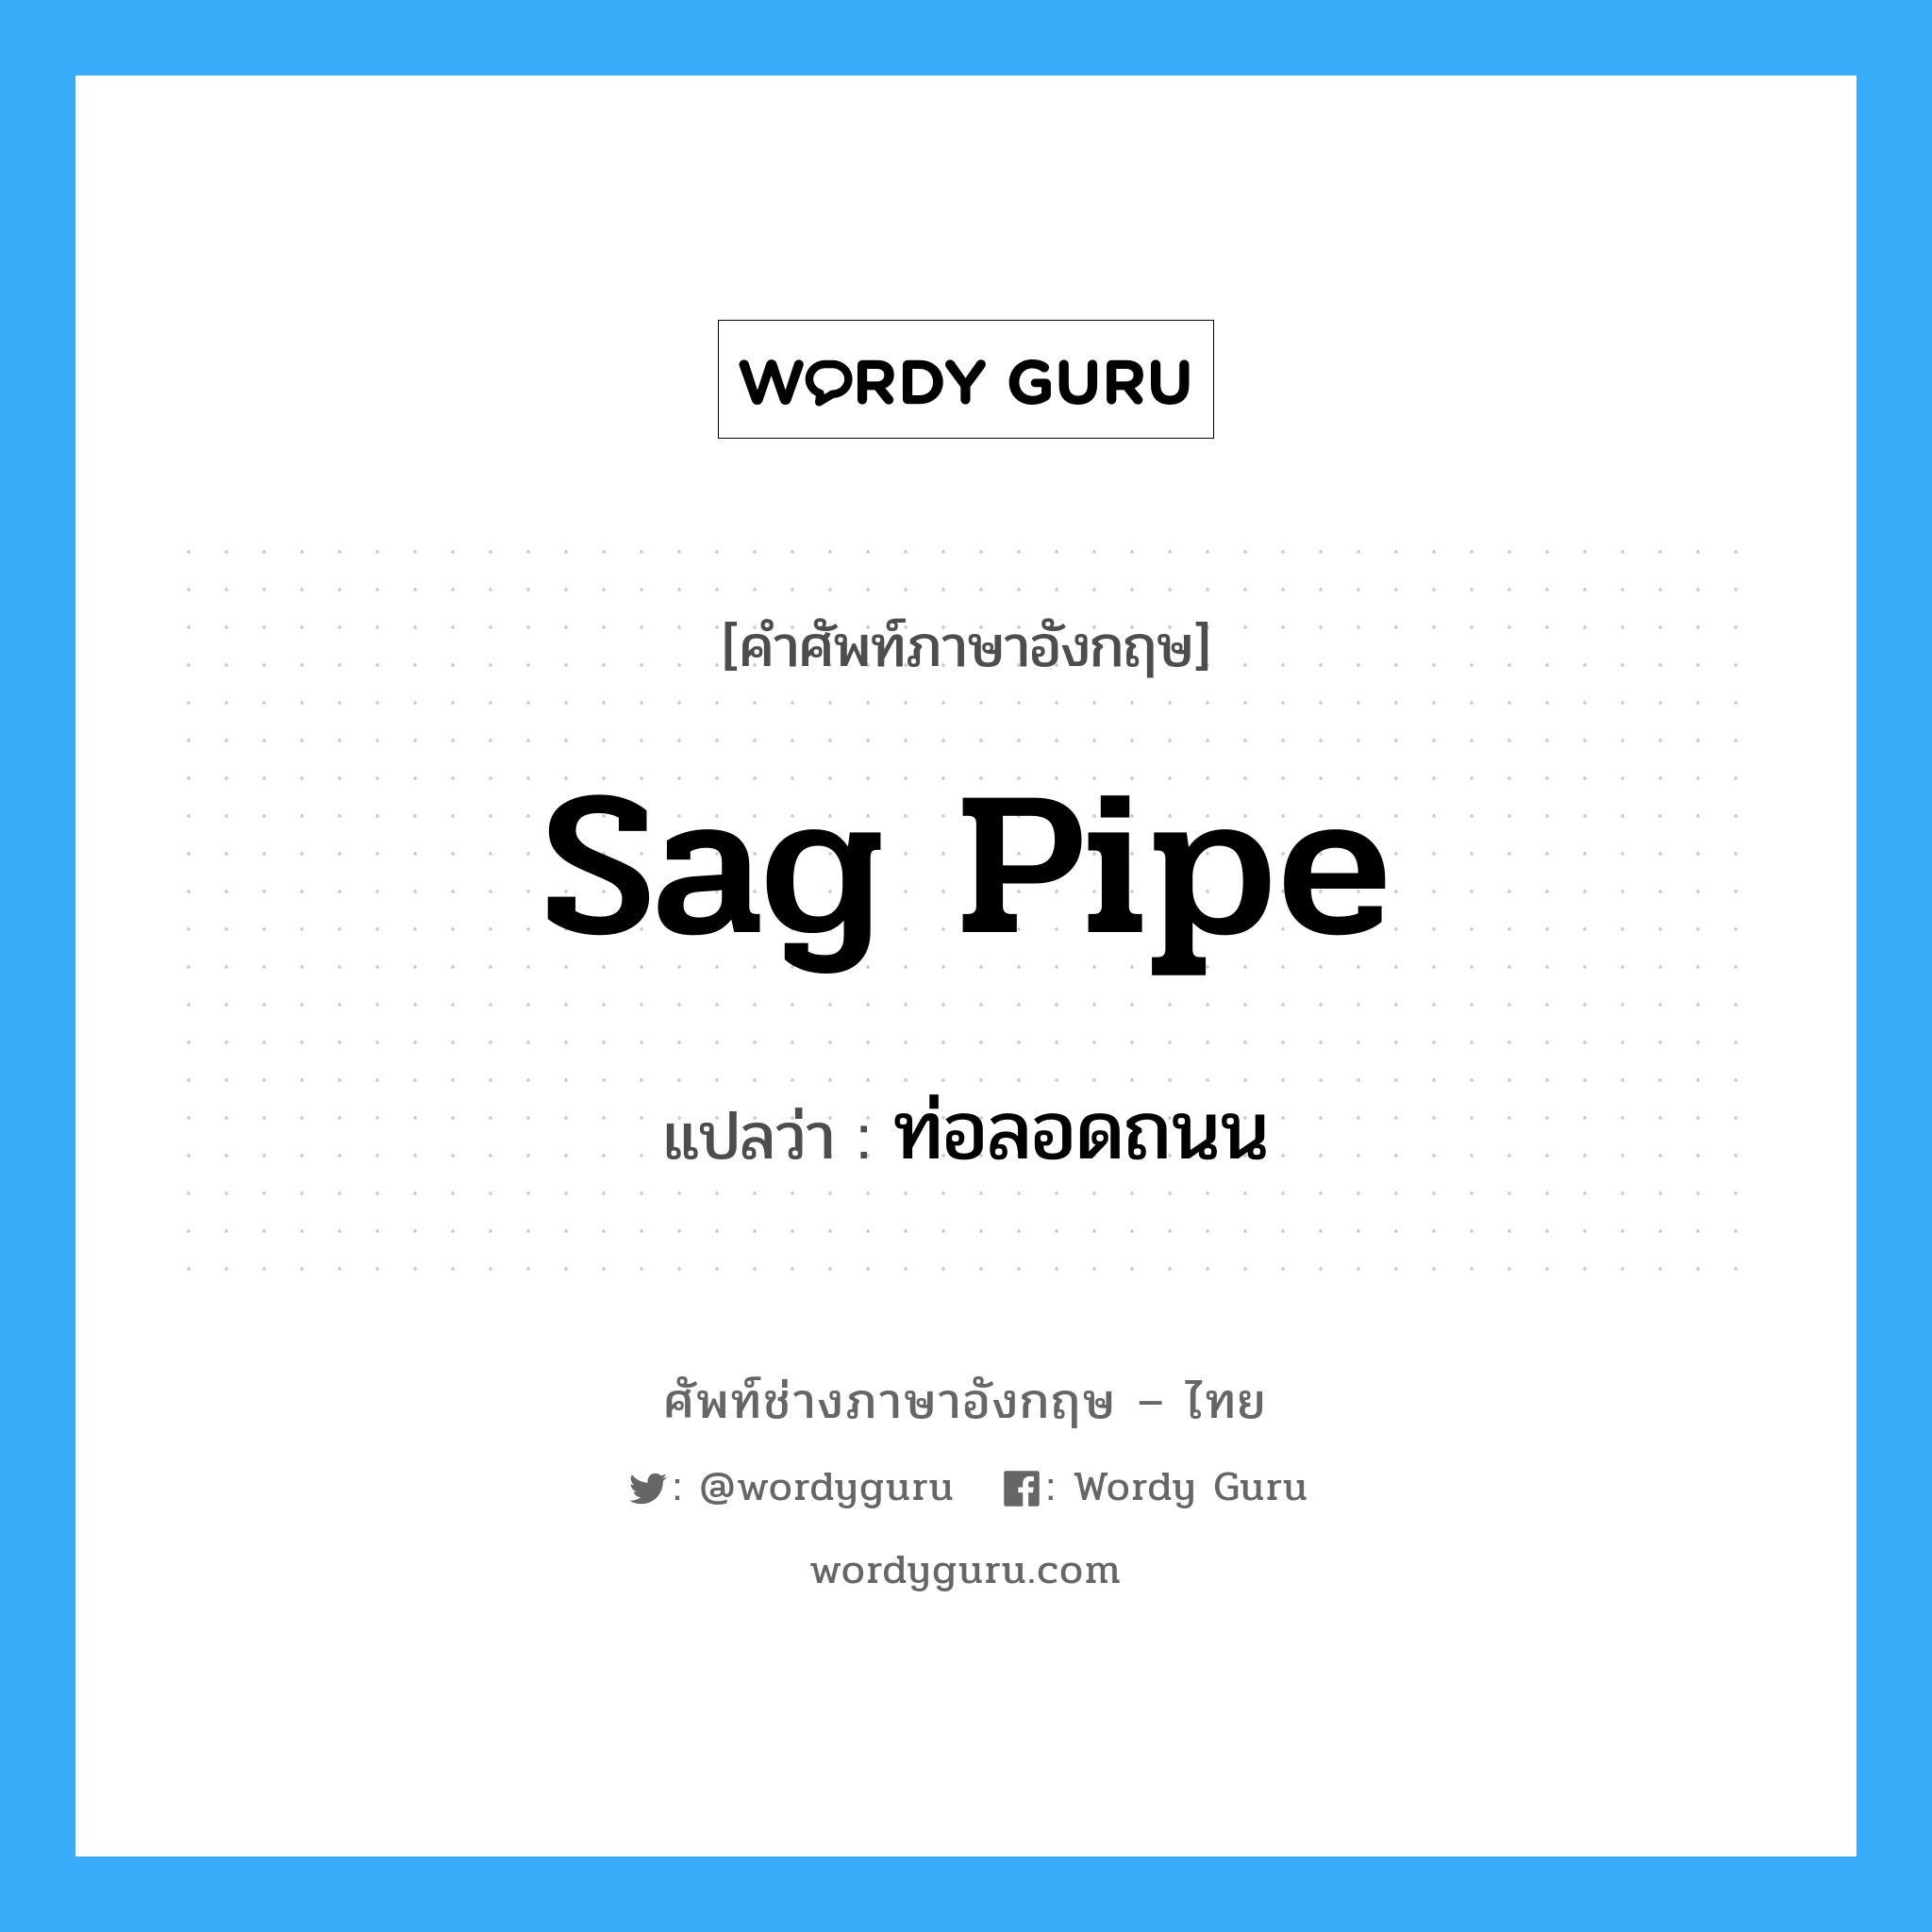 sag pipe แปลว่า?, คำศัพท์ช่างภาษาอังกฤษ - ไทย sag pipe คำศัพท์ภาษาอังกฤษ sag pipe แปลว่า ท่อลอดถนน